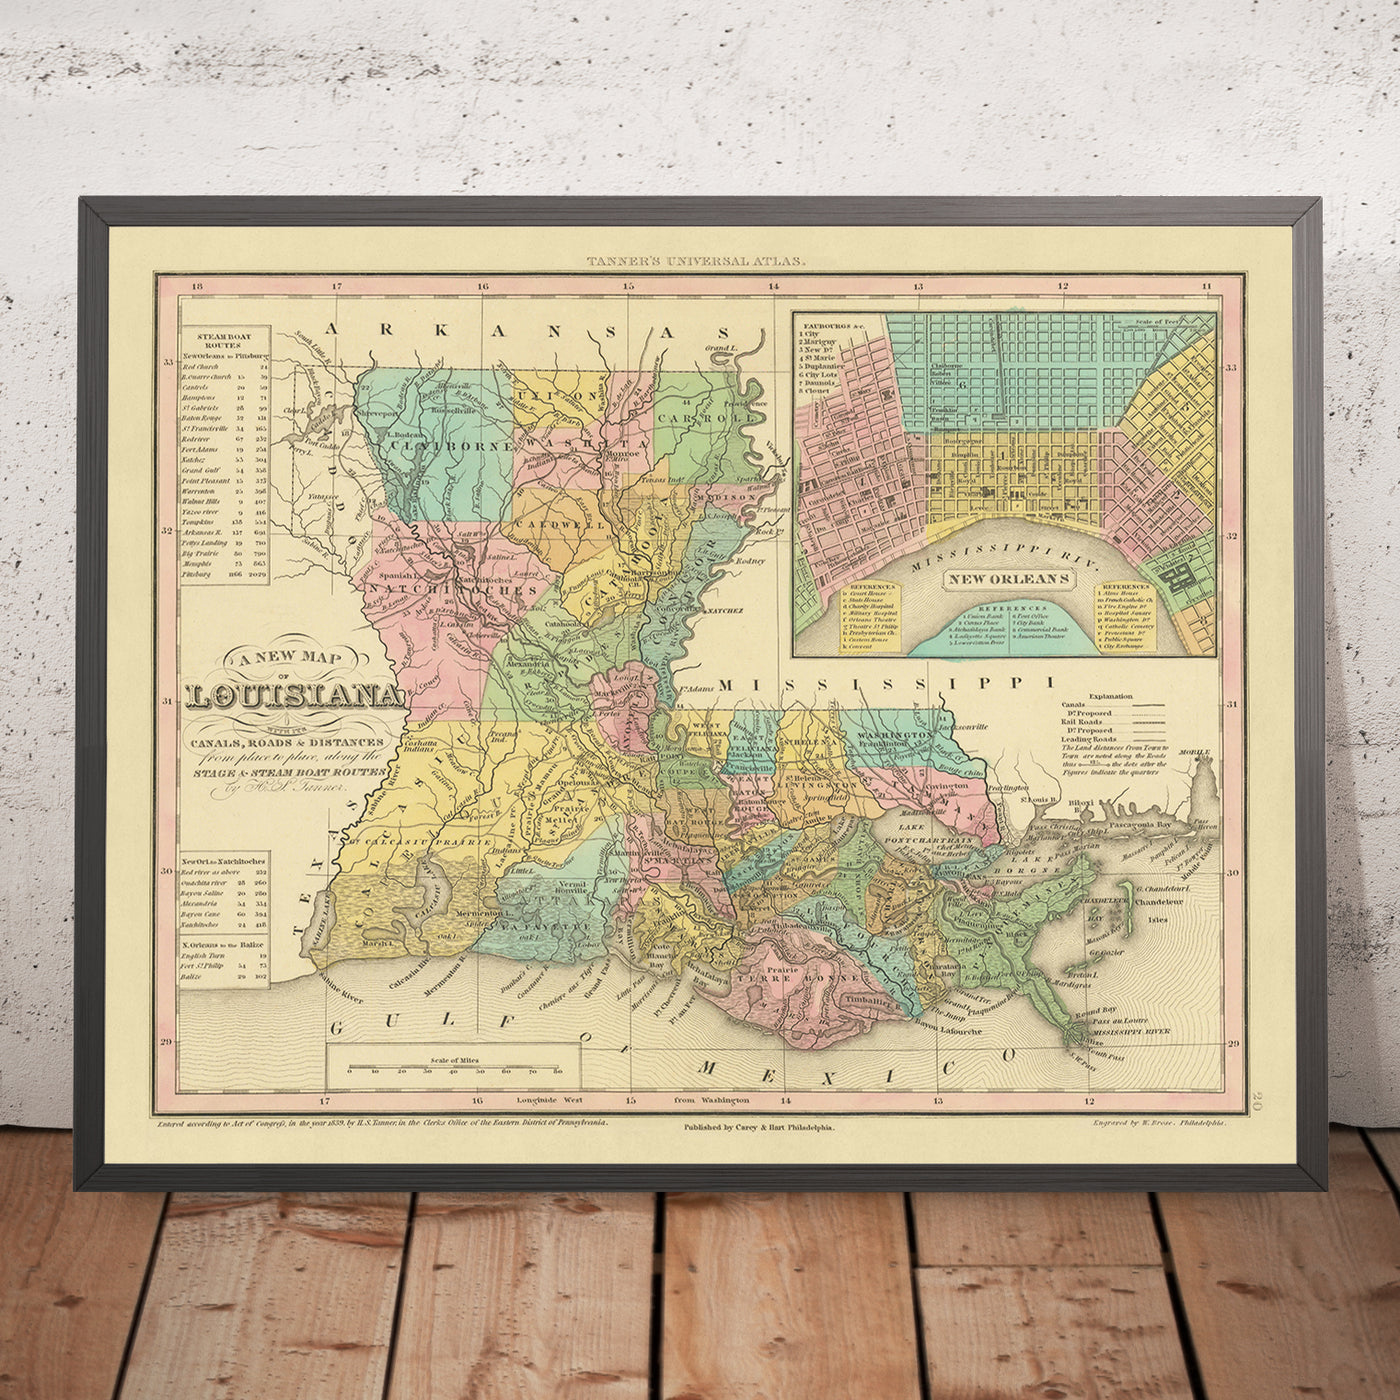 Mapa antiguo de Luisiana de Tanner, 1843: Nueva Orleans, Baton Rouge, el lago Pontchartrain, el delta del río Mississippi y el golfo de México